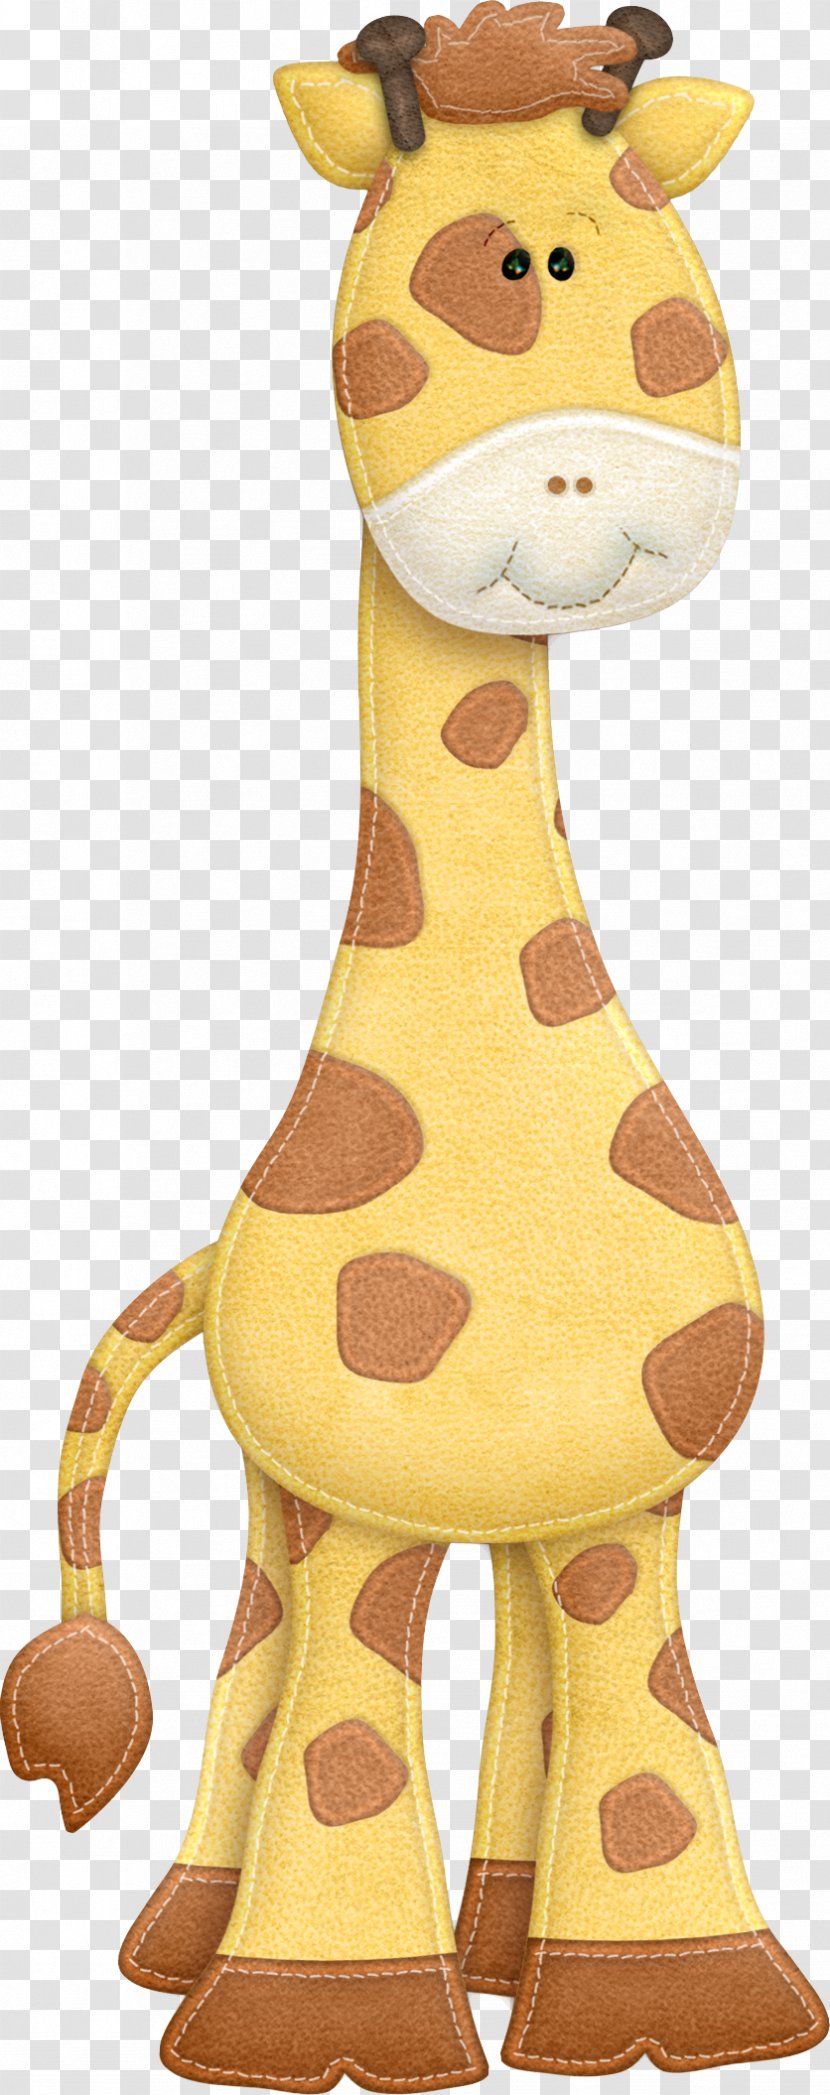 Northern Giraffe Digital Image Clip Art - Neck - Information Transparent PNG